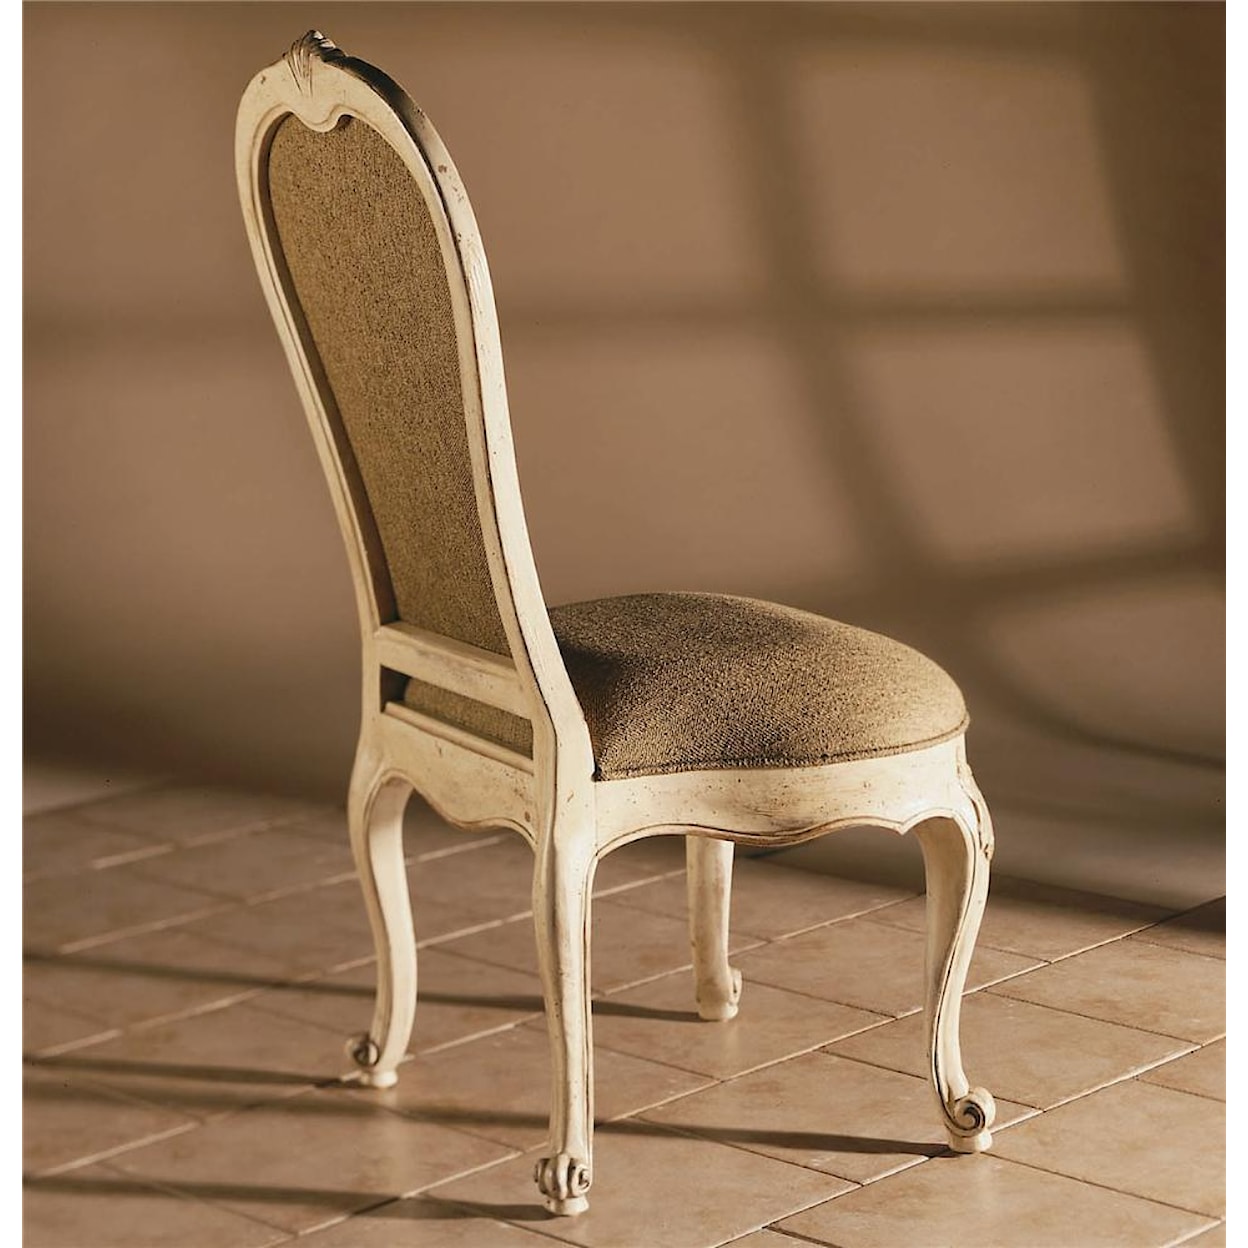 Century Century Chair Coteau Chair